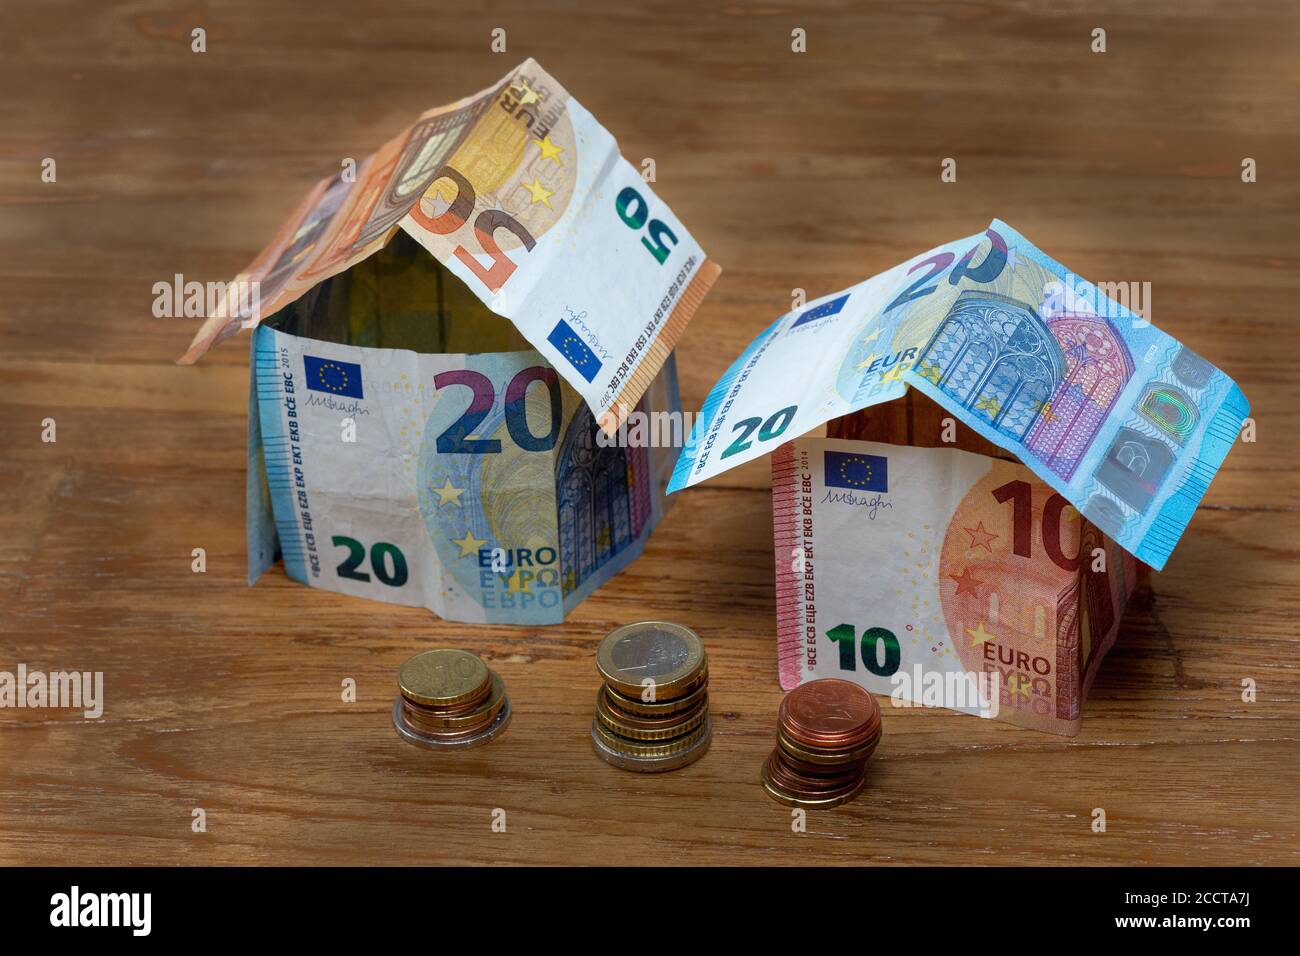 Deux maisons en billets de banque de 50, 20 et 10 euros avec des piles de pièces en euros Banque D'Images